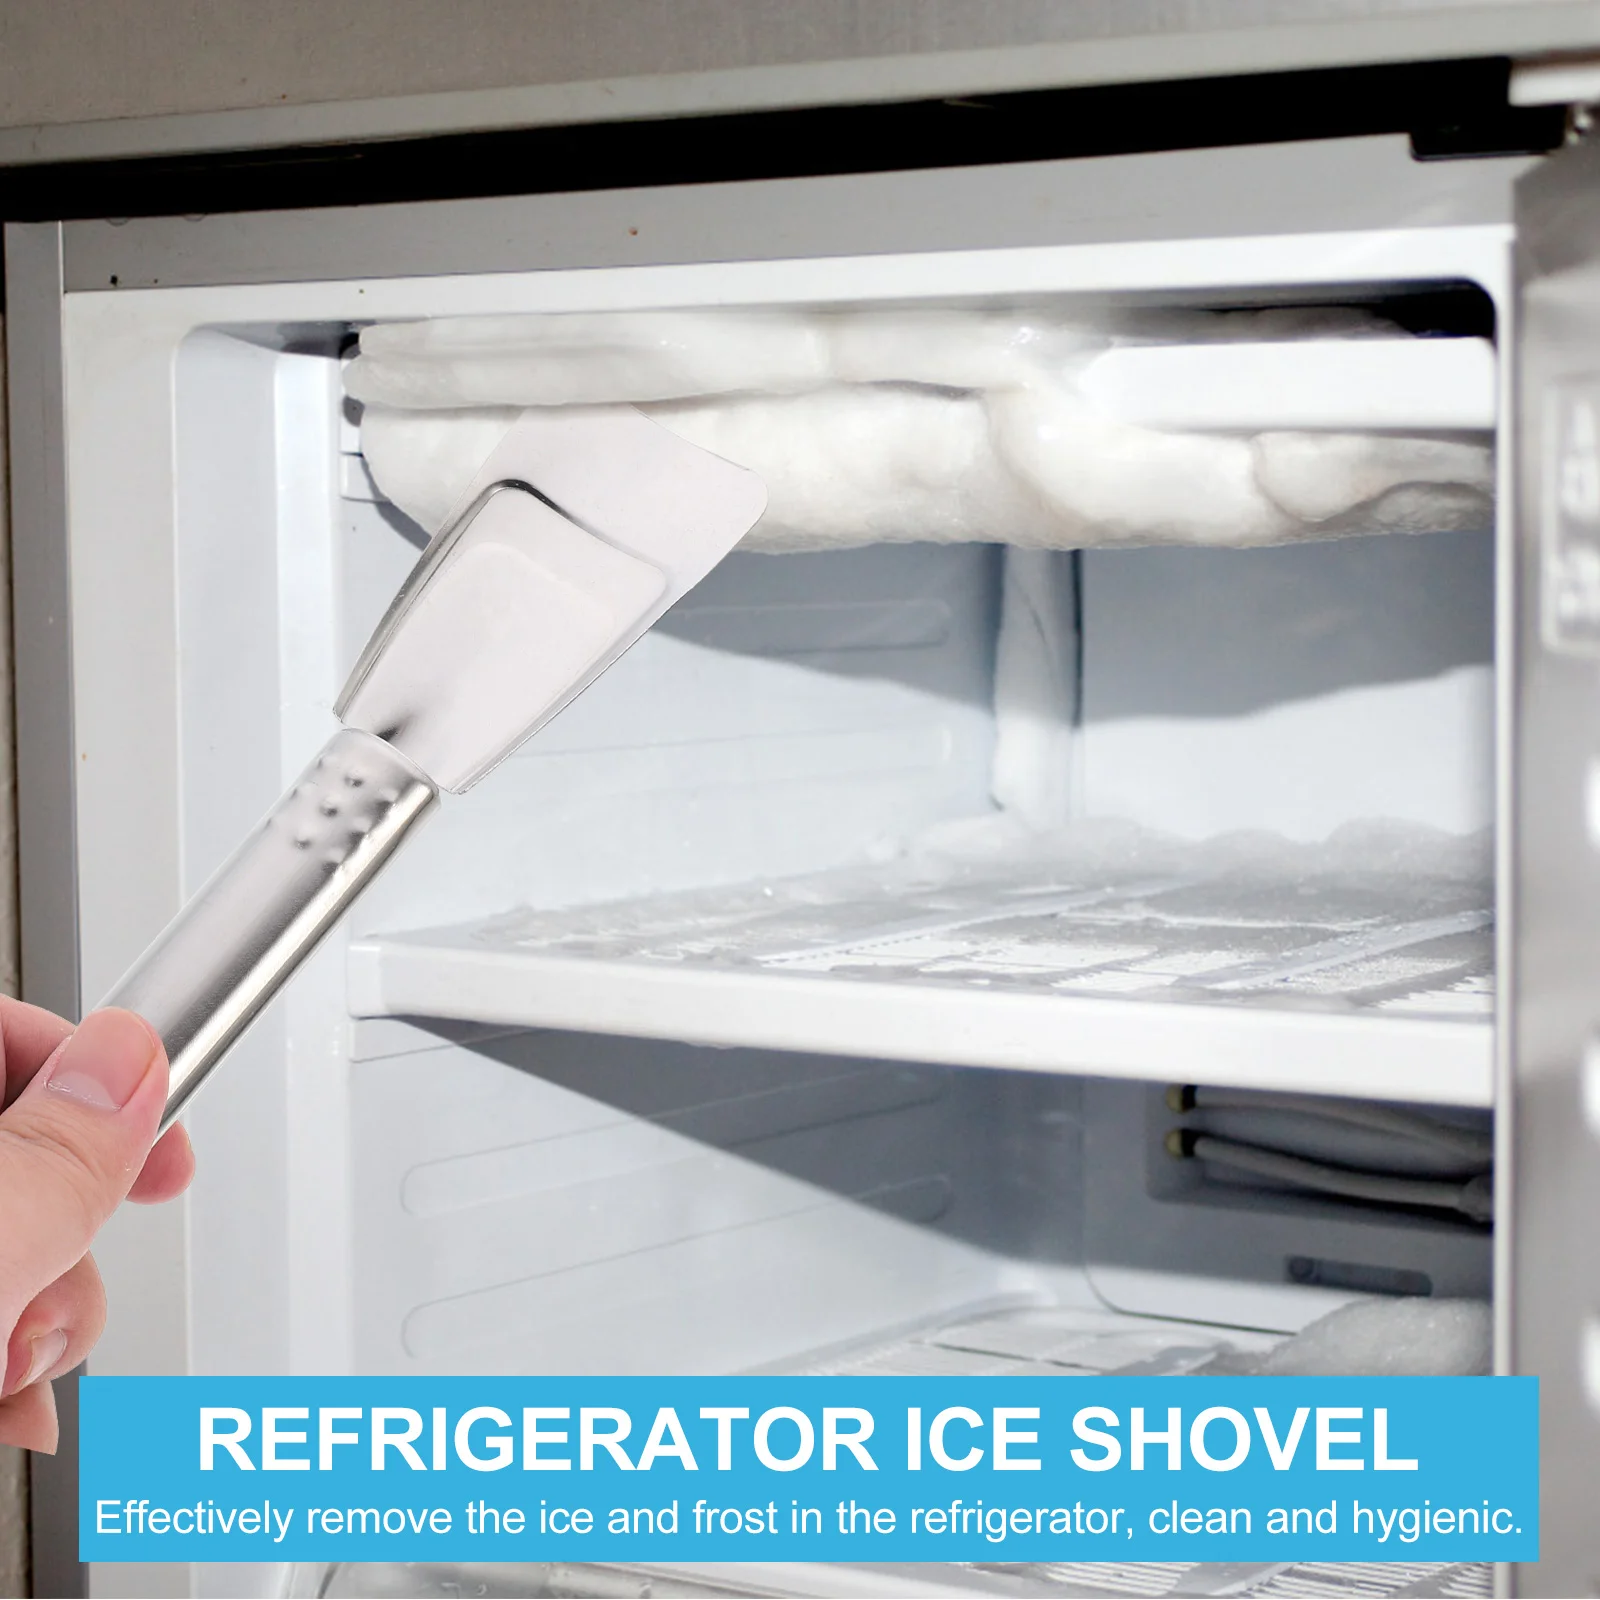 Совок для размораживания льда в домашних условиях из нержавеющей стали для удаления морозильной камеры Скребок для удаления льда с холодильника Ручной размораживатель холодильника1